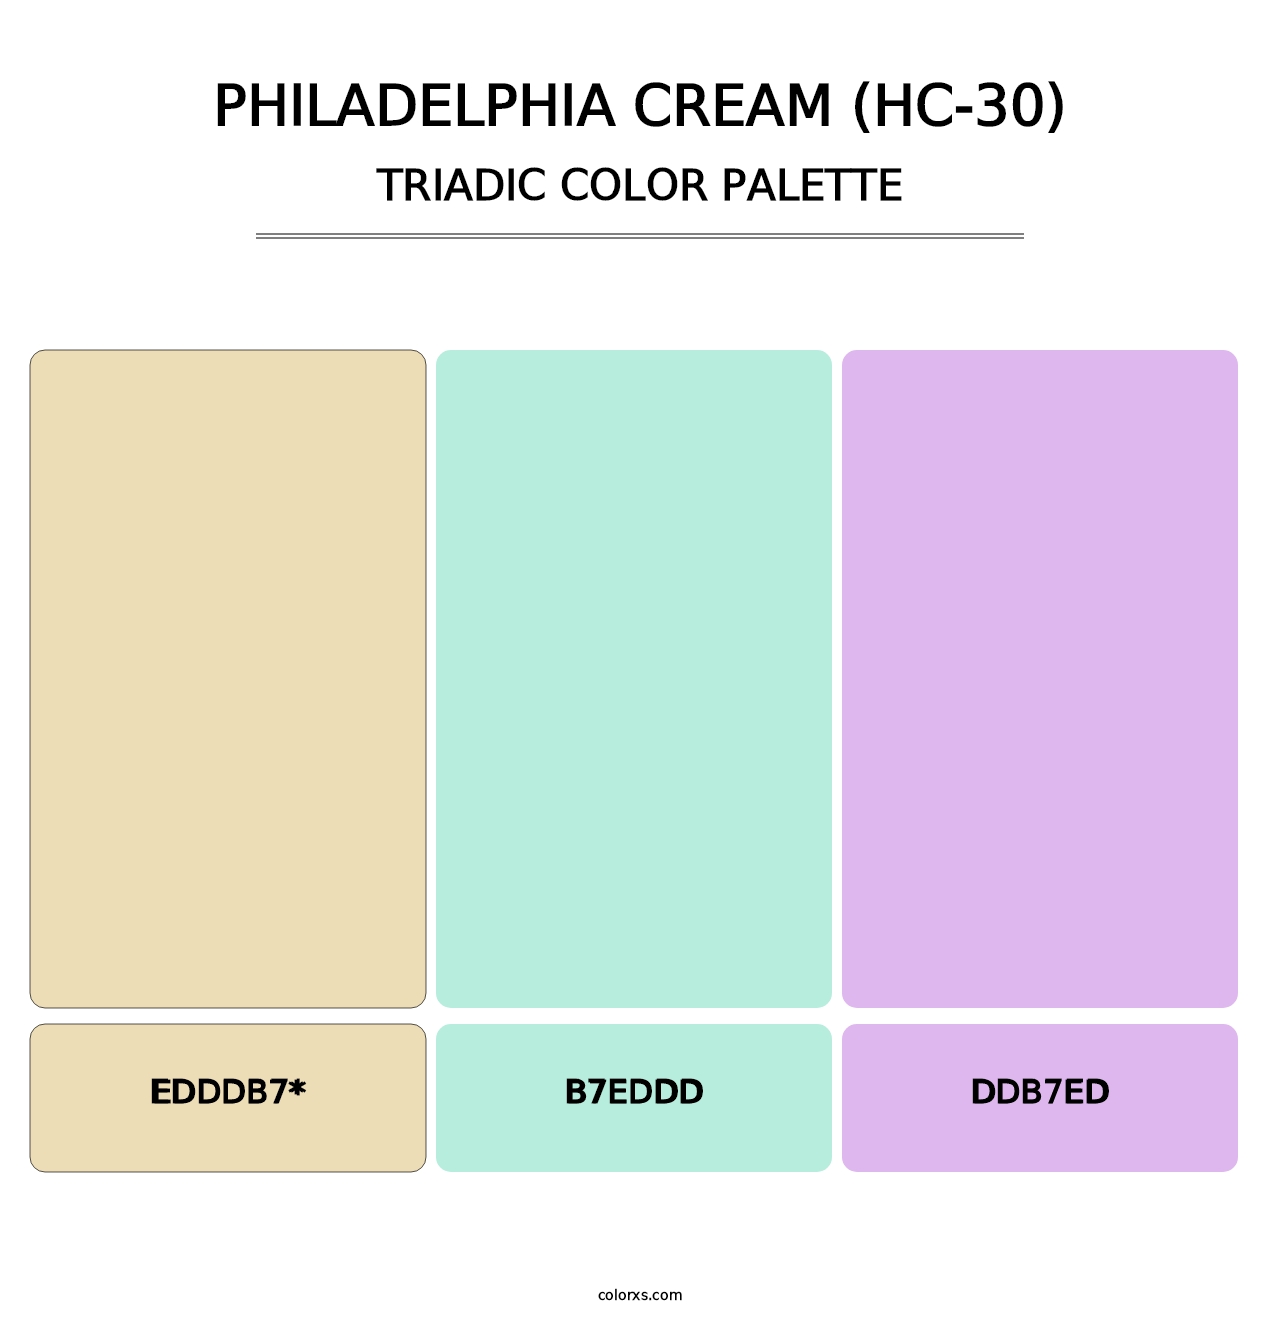 Philadelphia Cream (HC-30) - Triadic Color Palette